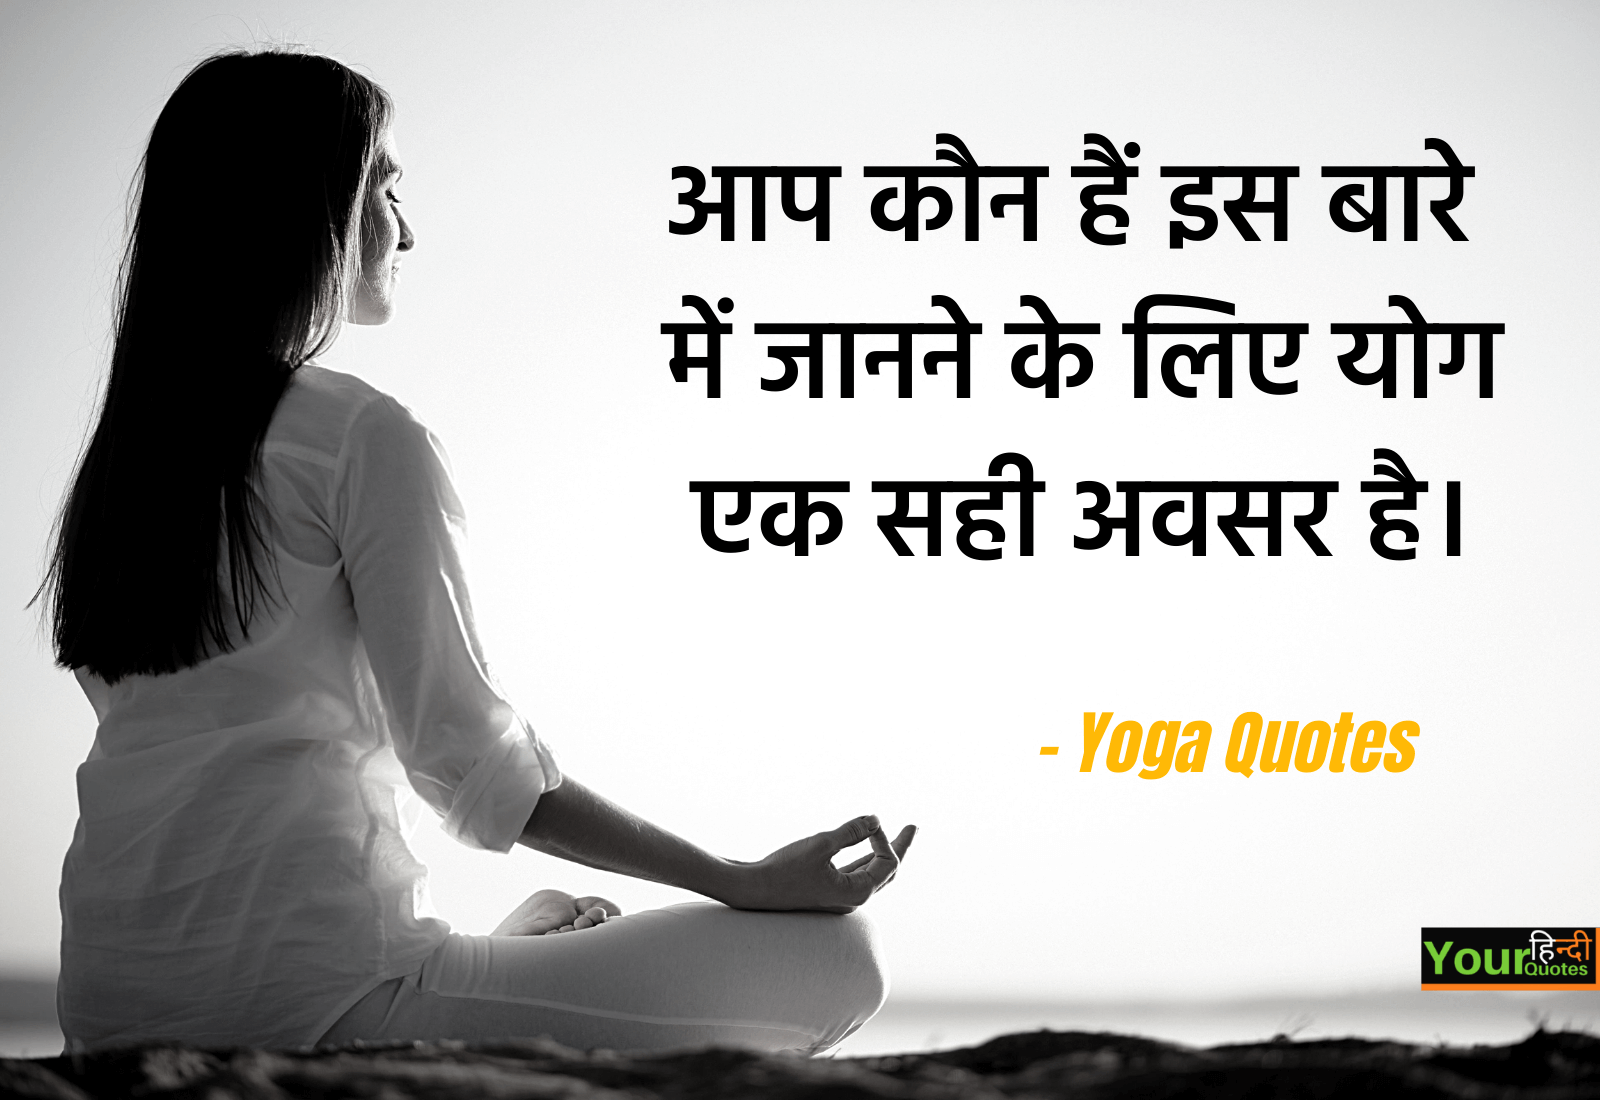 Hindi Yoga Quote Image